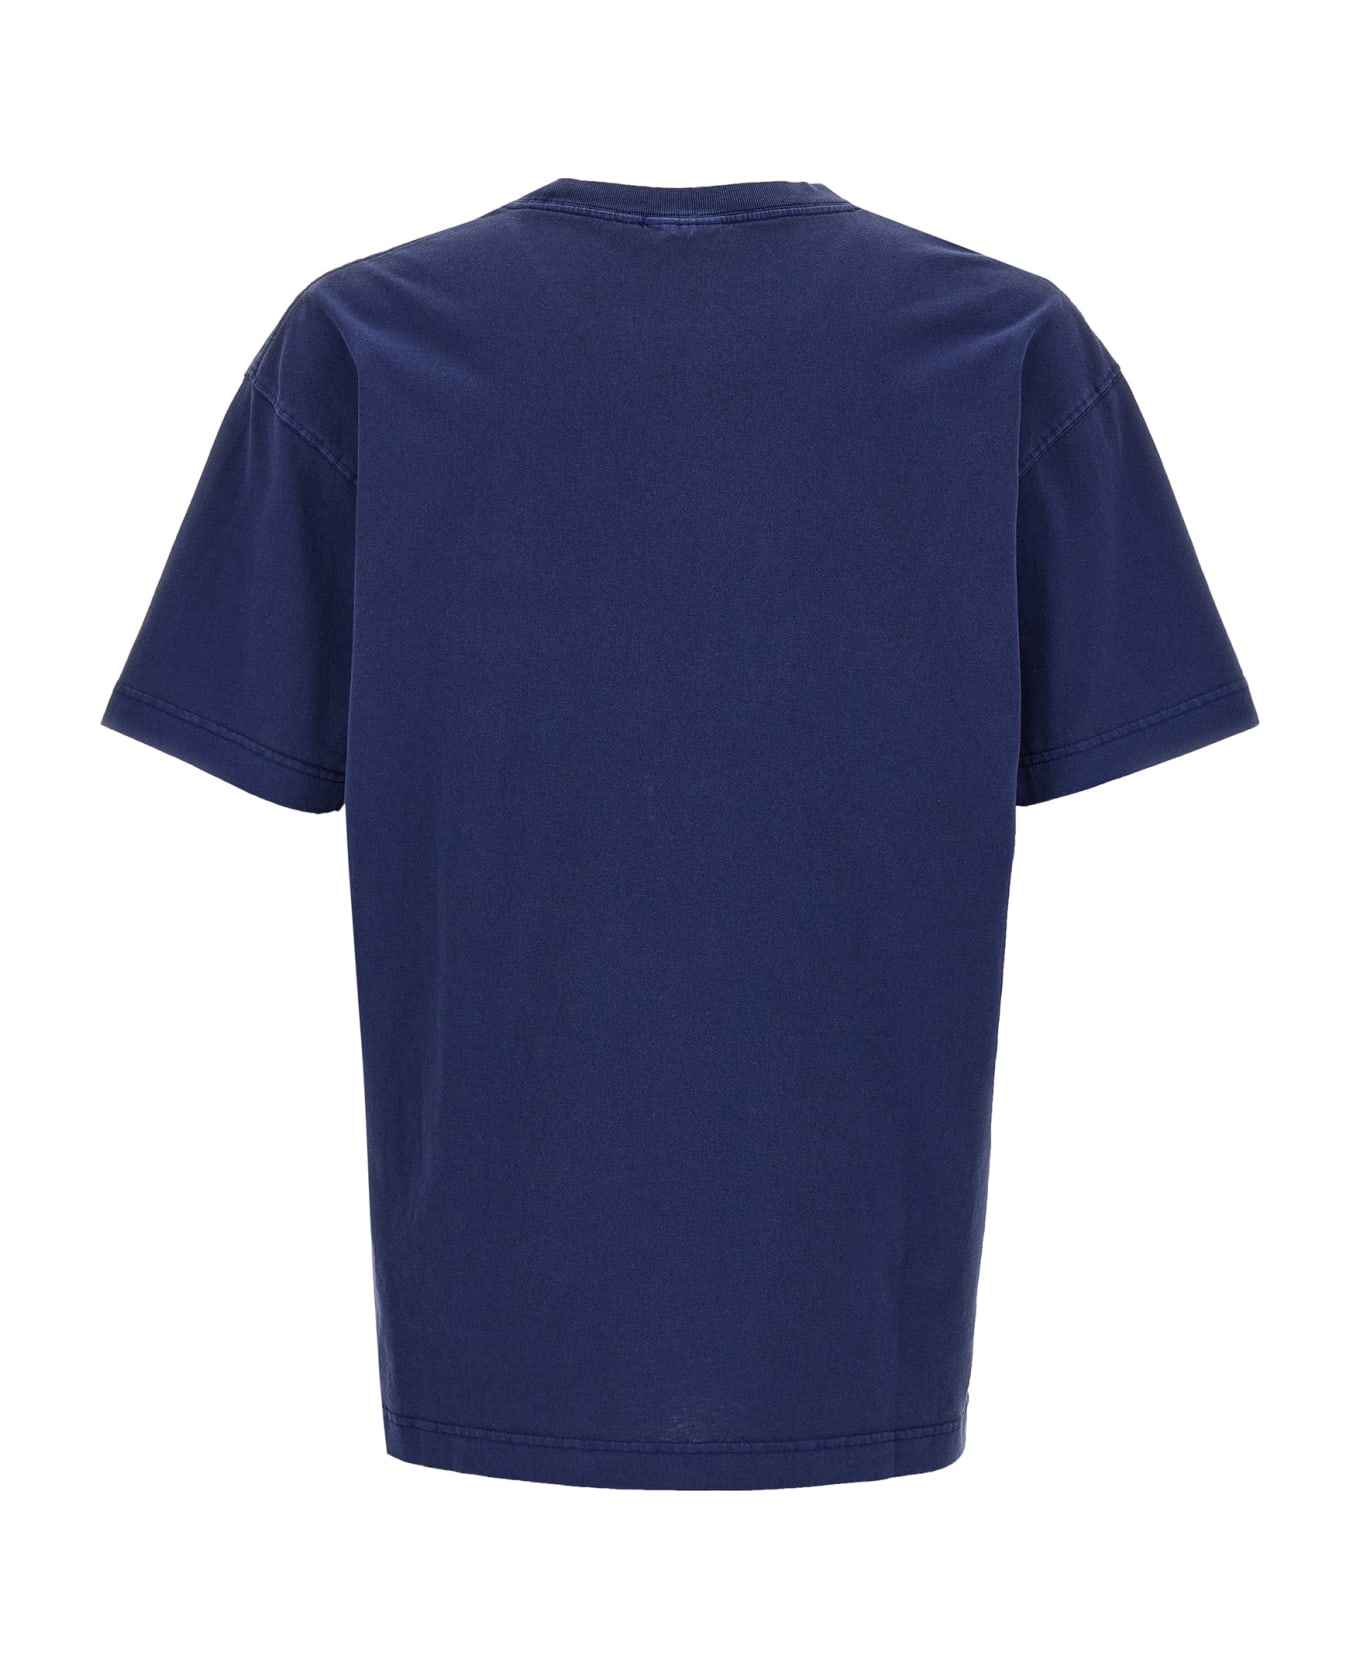 Carhartt 'nelson' T-shirt - Blue